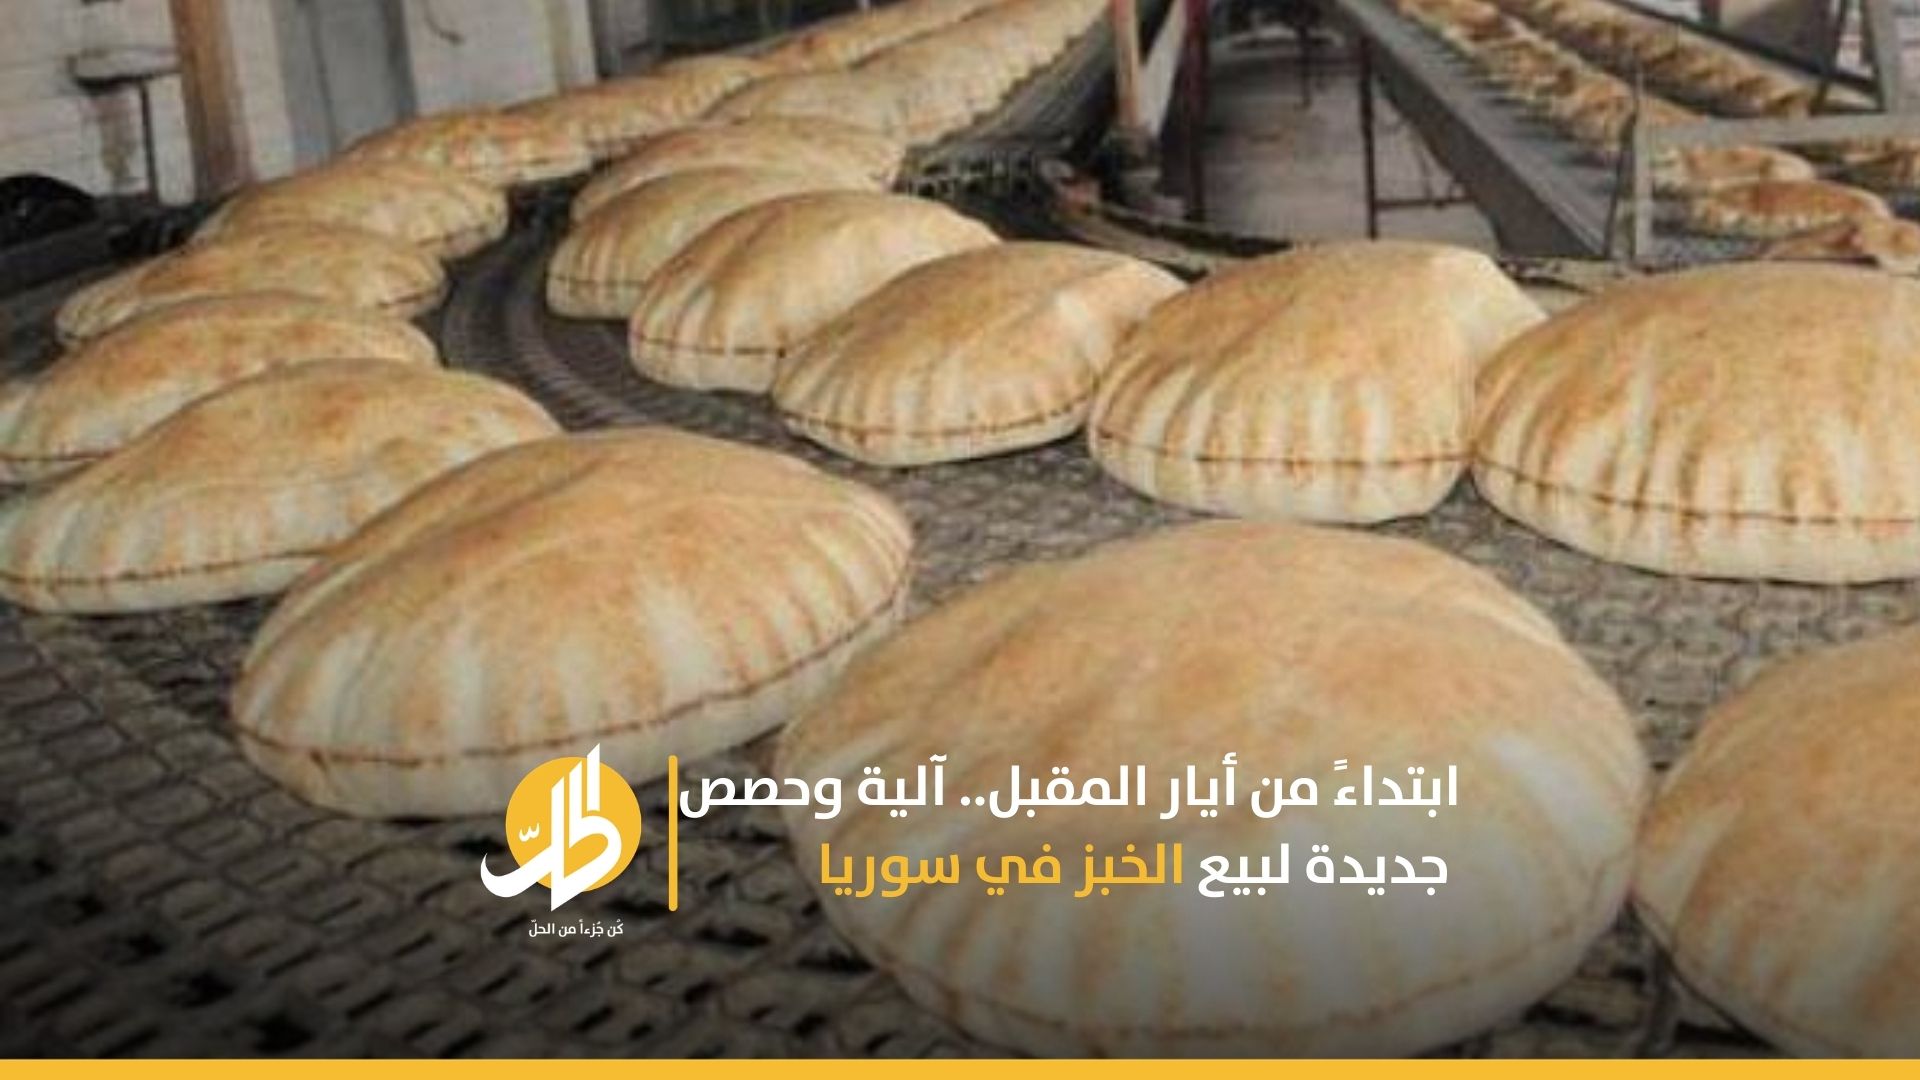 ابتداءً من أيار المقبل.. آلية وحصص جديدة لبيع الخبز في سوريا